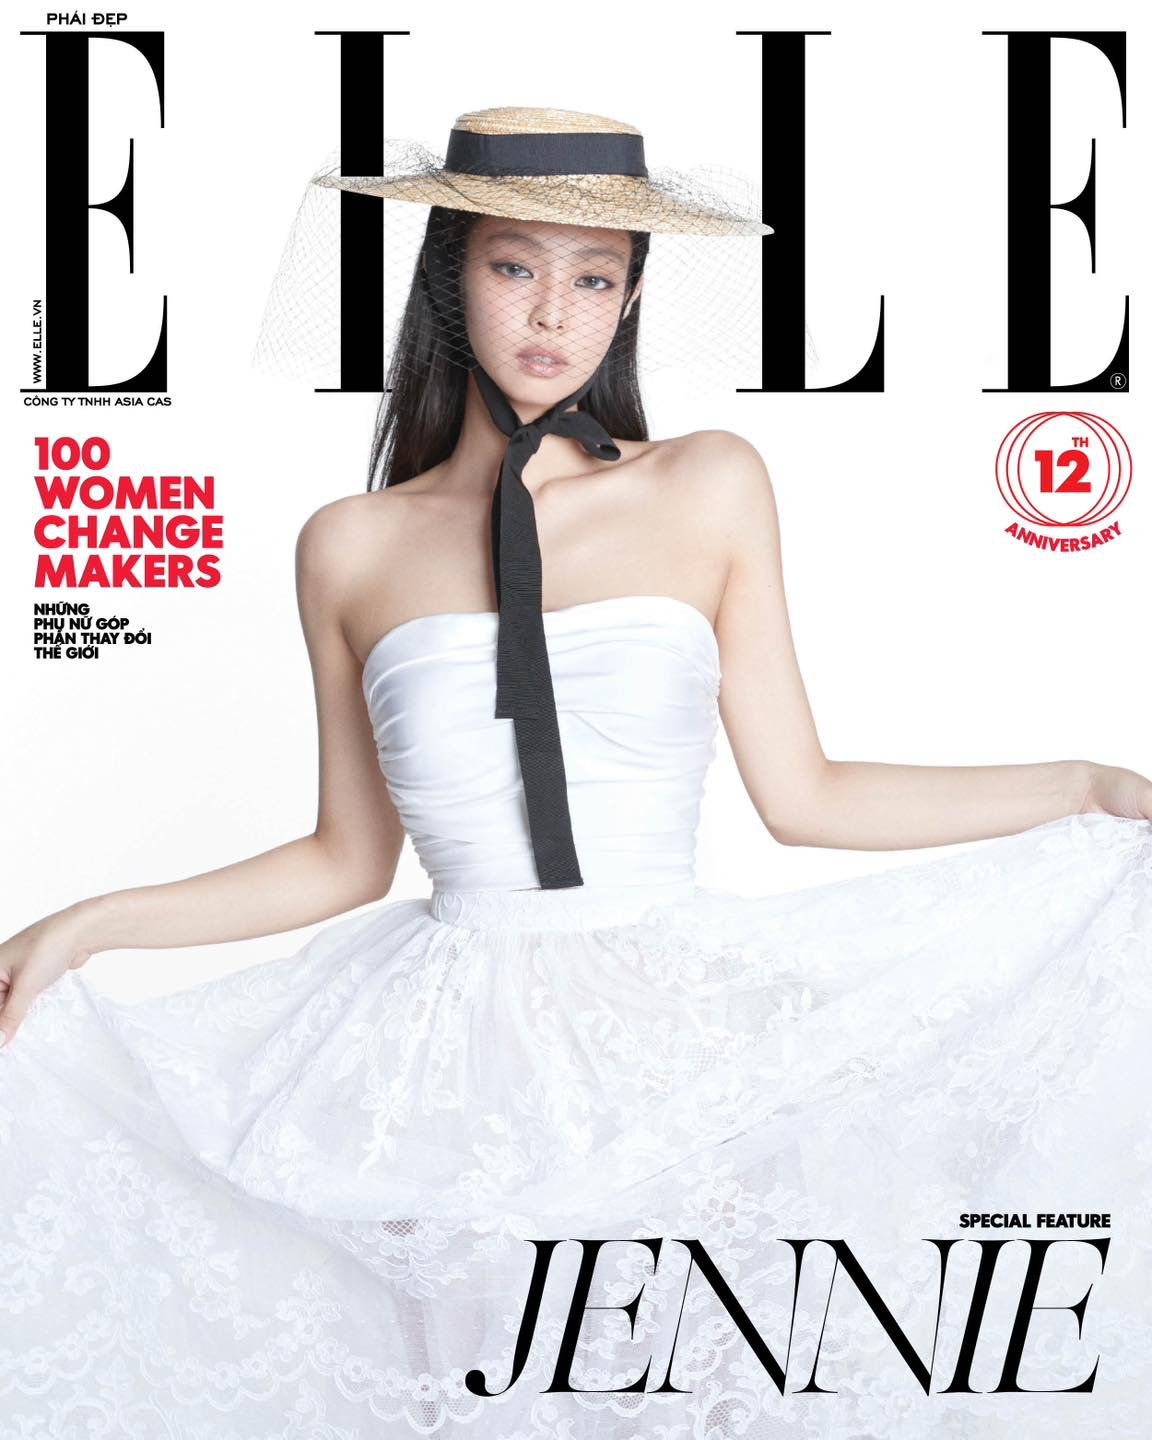 Tạp chí ELLE tháng 11 - Spin off Jennie